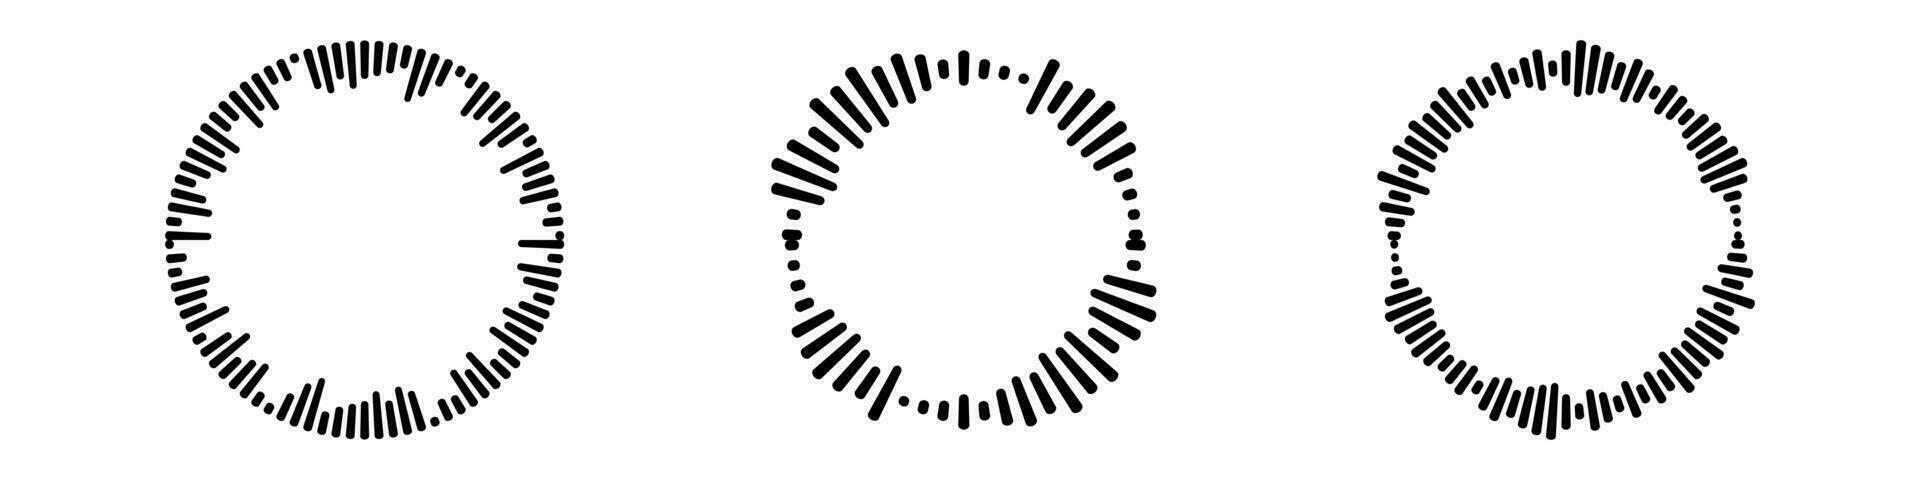 cirkel audio vågor uppsättning. cirkulär musik ljud grafisk design samling. runda ljud och radiell radio equalizer.vector isolerat illustration vektor